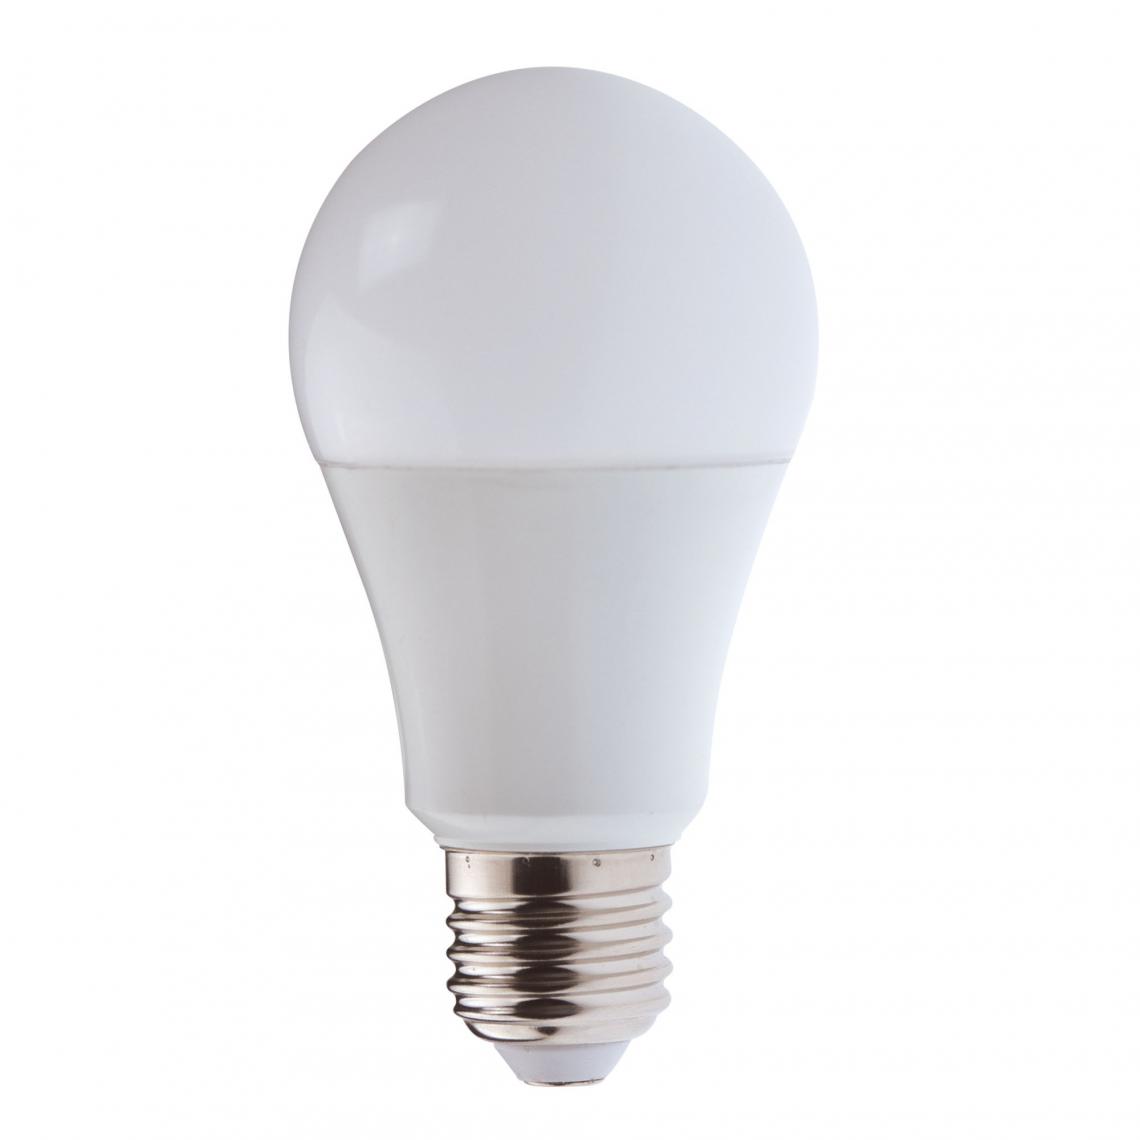 Velamp - Ampoule LED SMD, standard A65, 20W / 2300lm, culot E27, 4000K - Ampoules LED